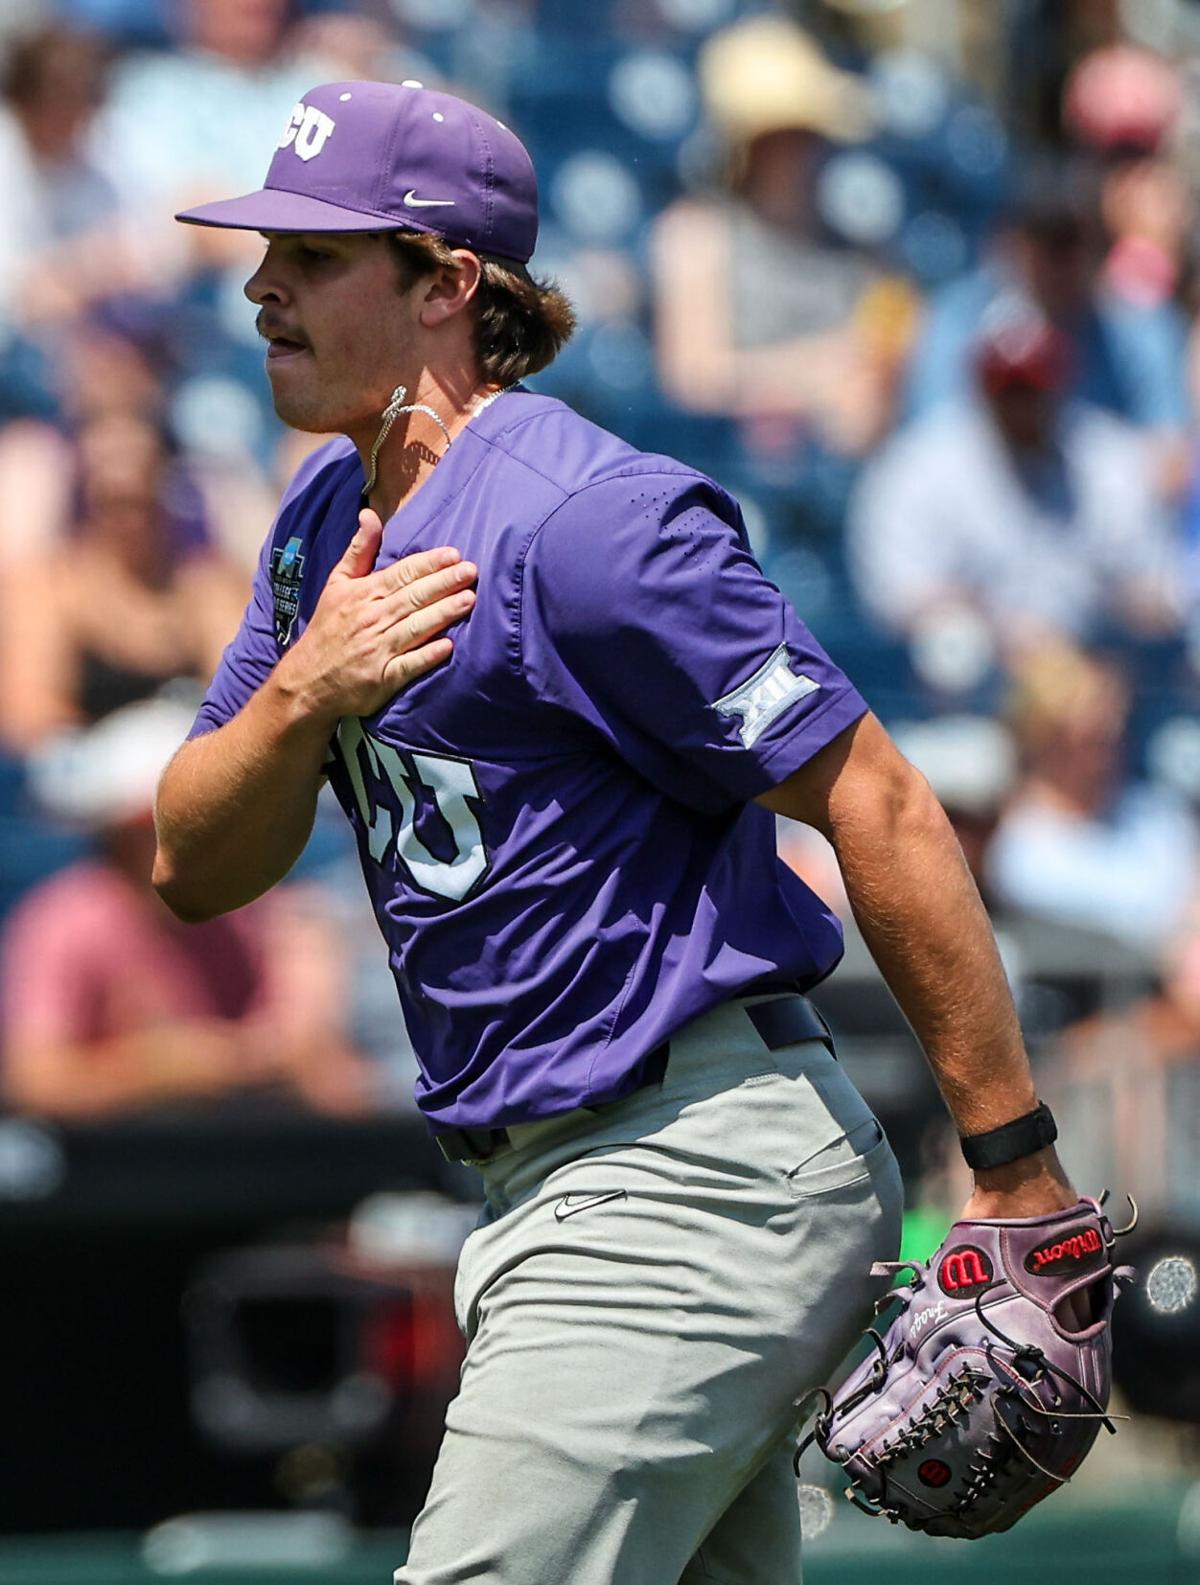 tcu purple baseball jersey